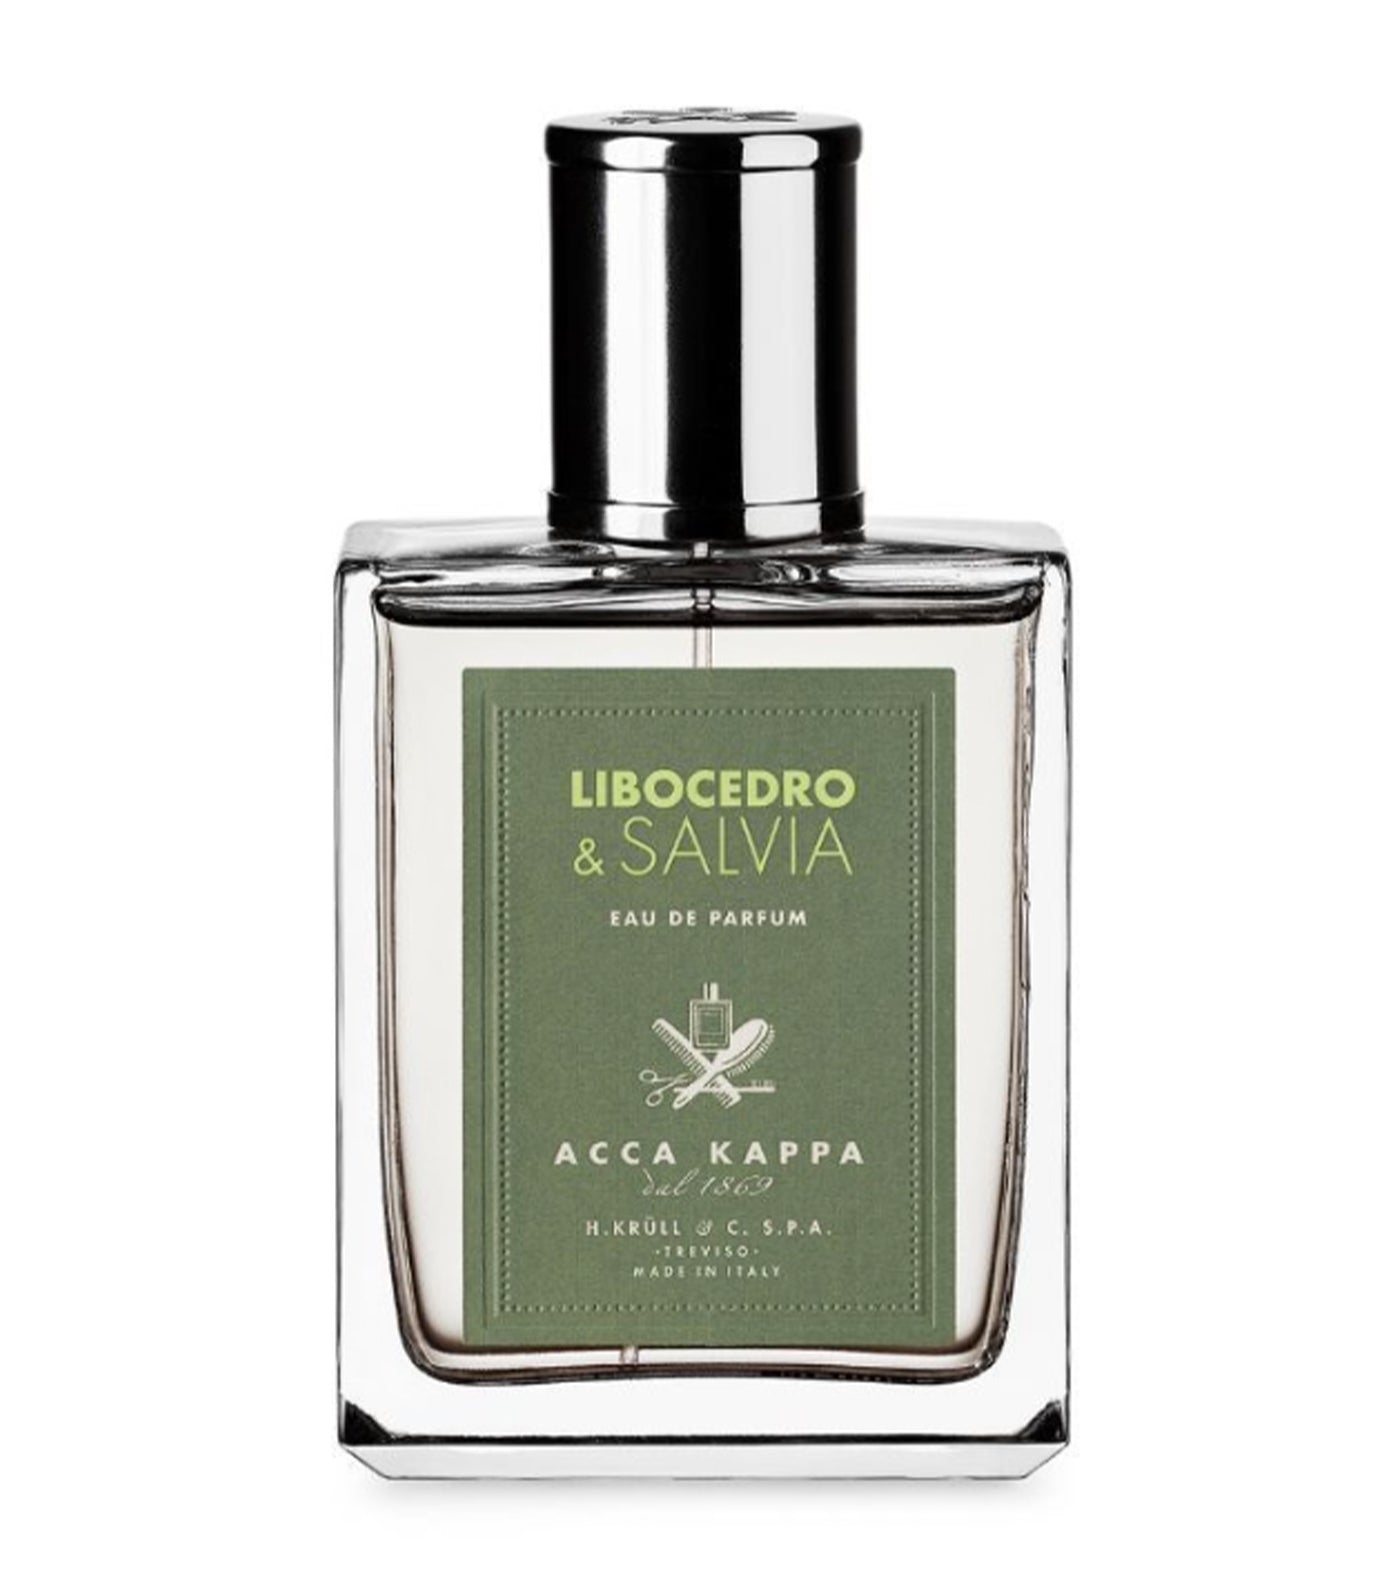 Libocedro & Savia Eau de Parfum